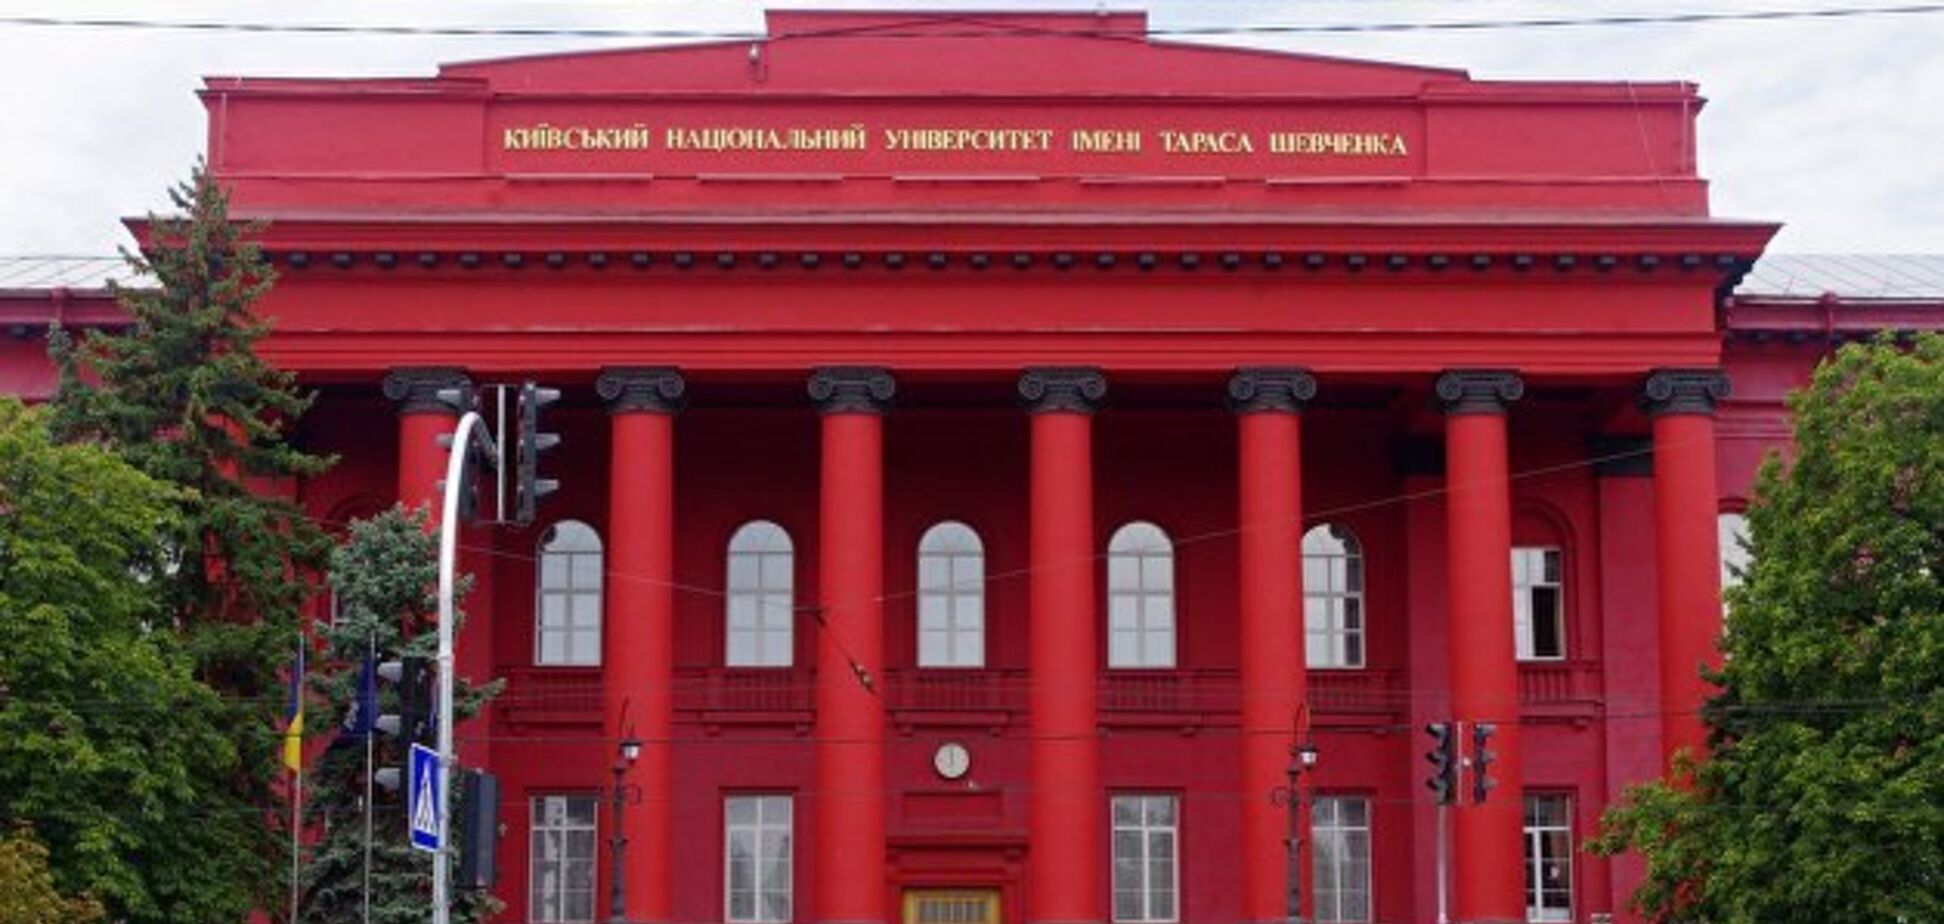 Станет ярче: в Киеве отремонтируют популярный университет